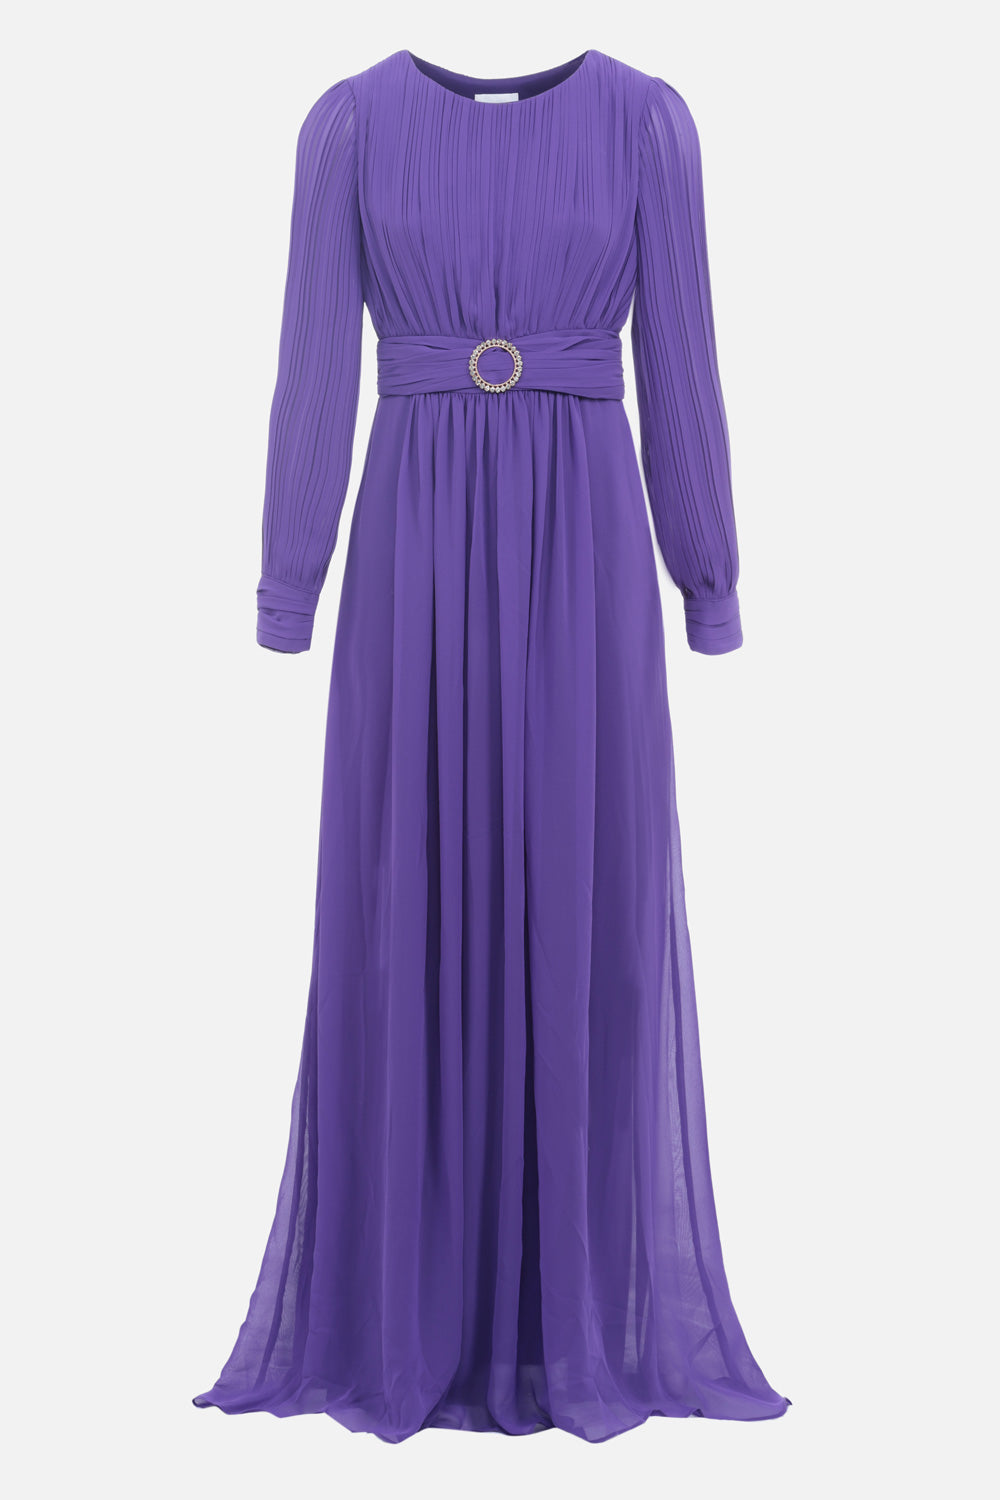 Long lila chiffon dress